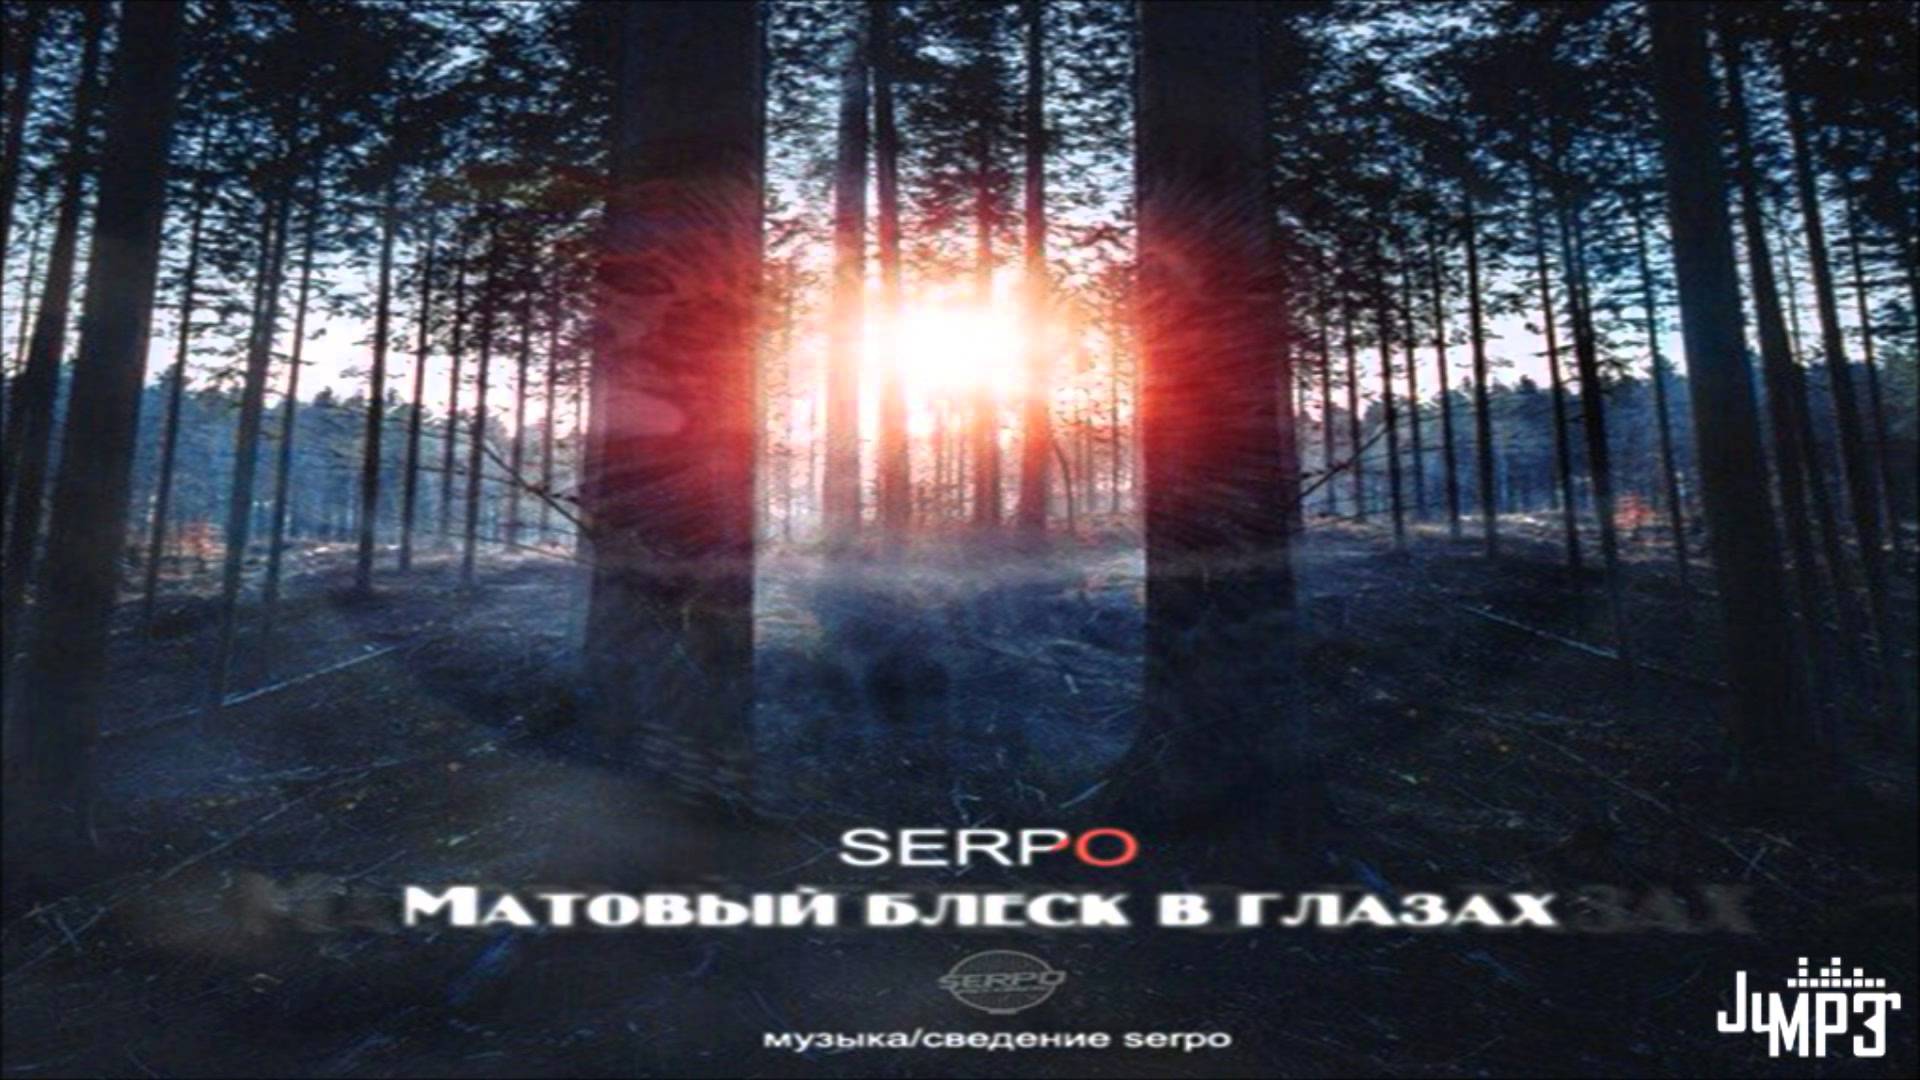 Serpo - Матовый блеск в глазах